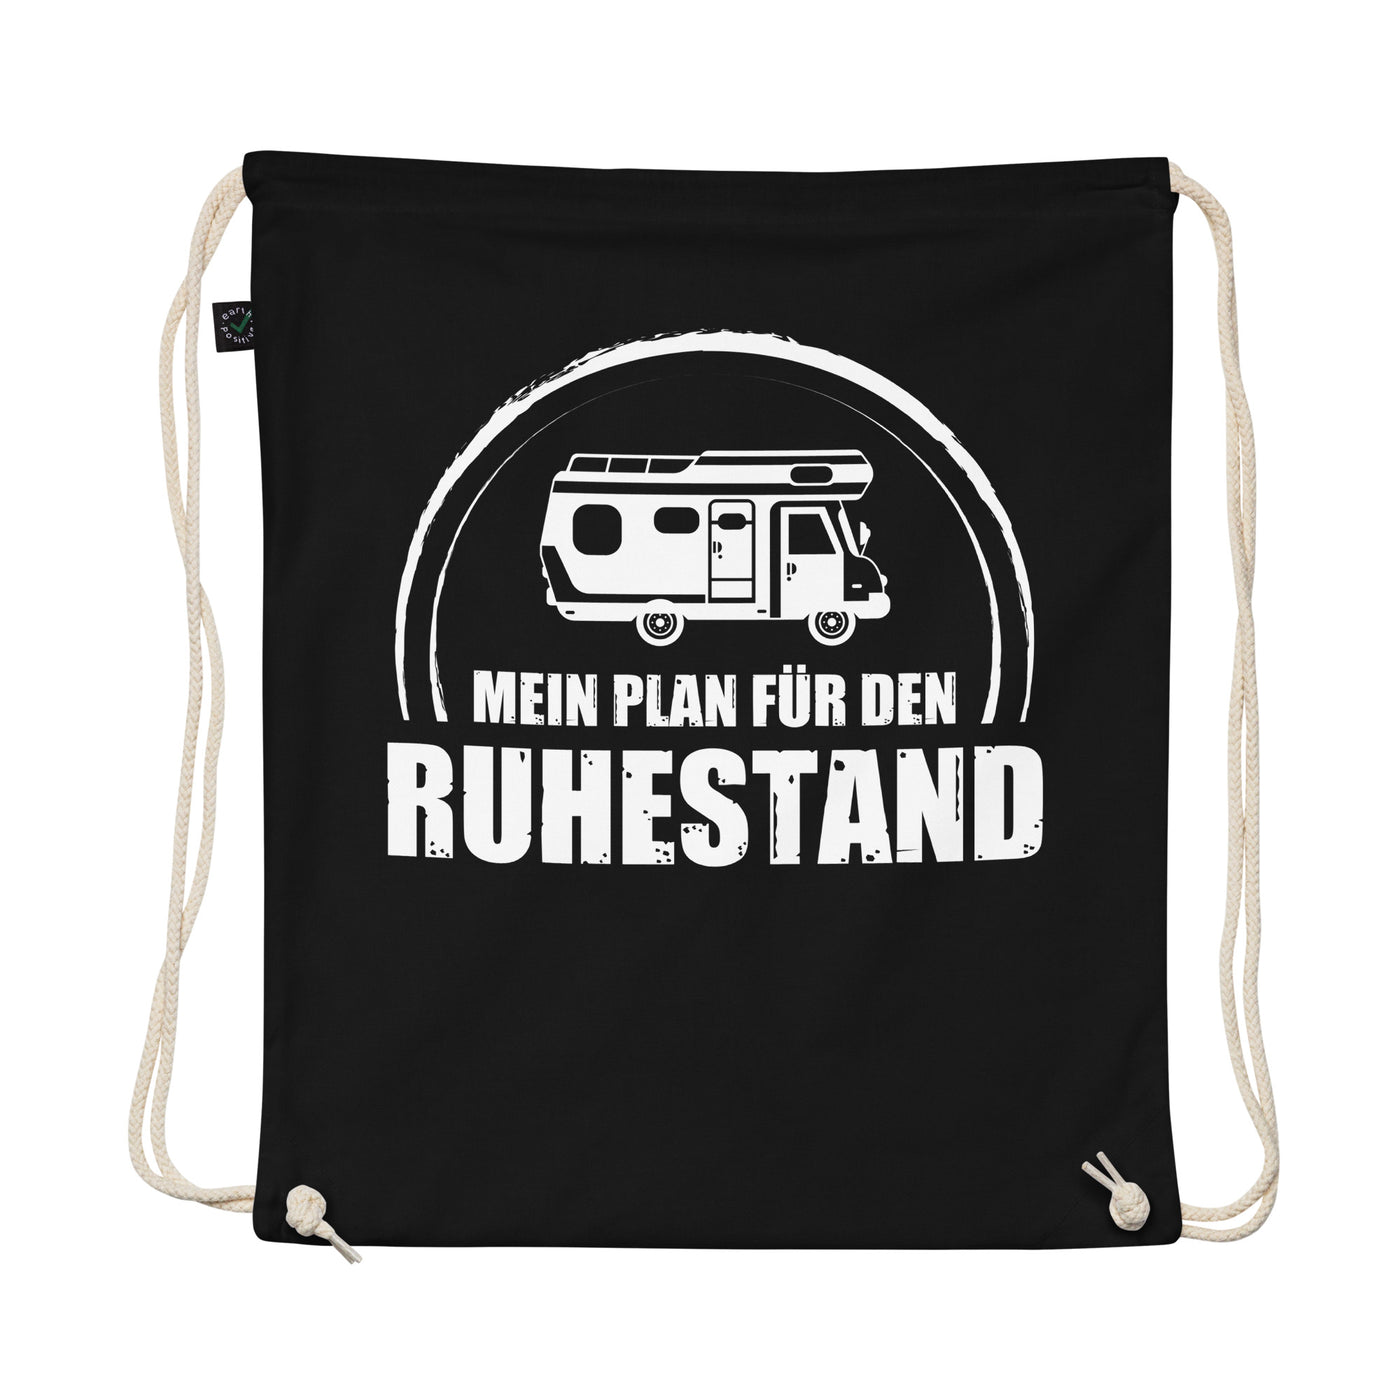 Mein Plan Fur Den Ruhestand - Organic Turnbeutel camping Schwarz